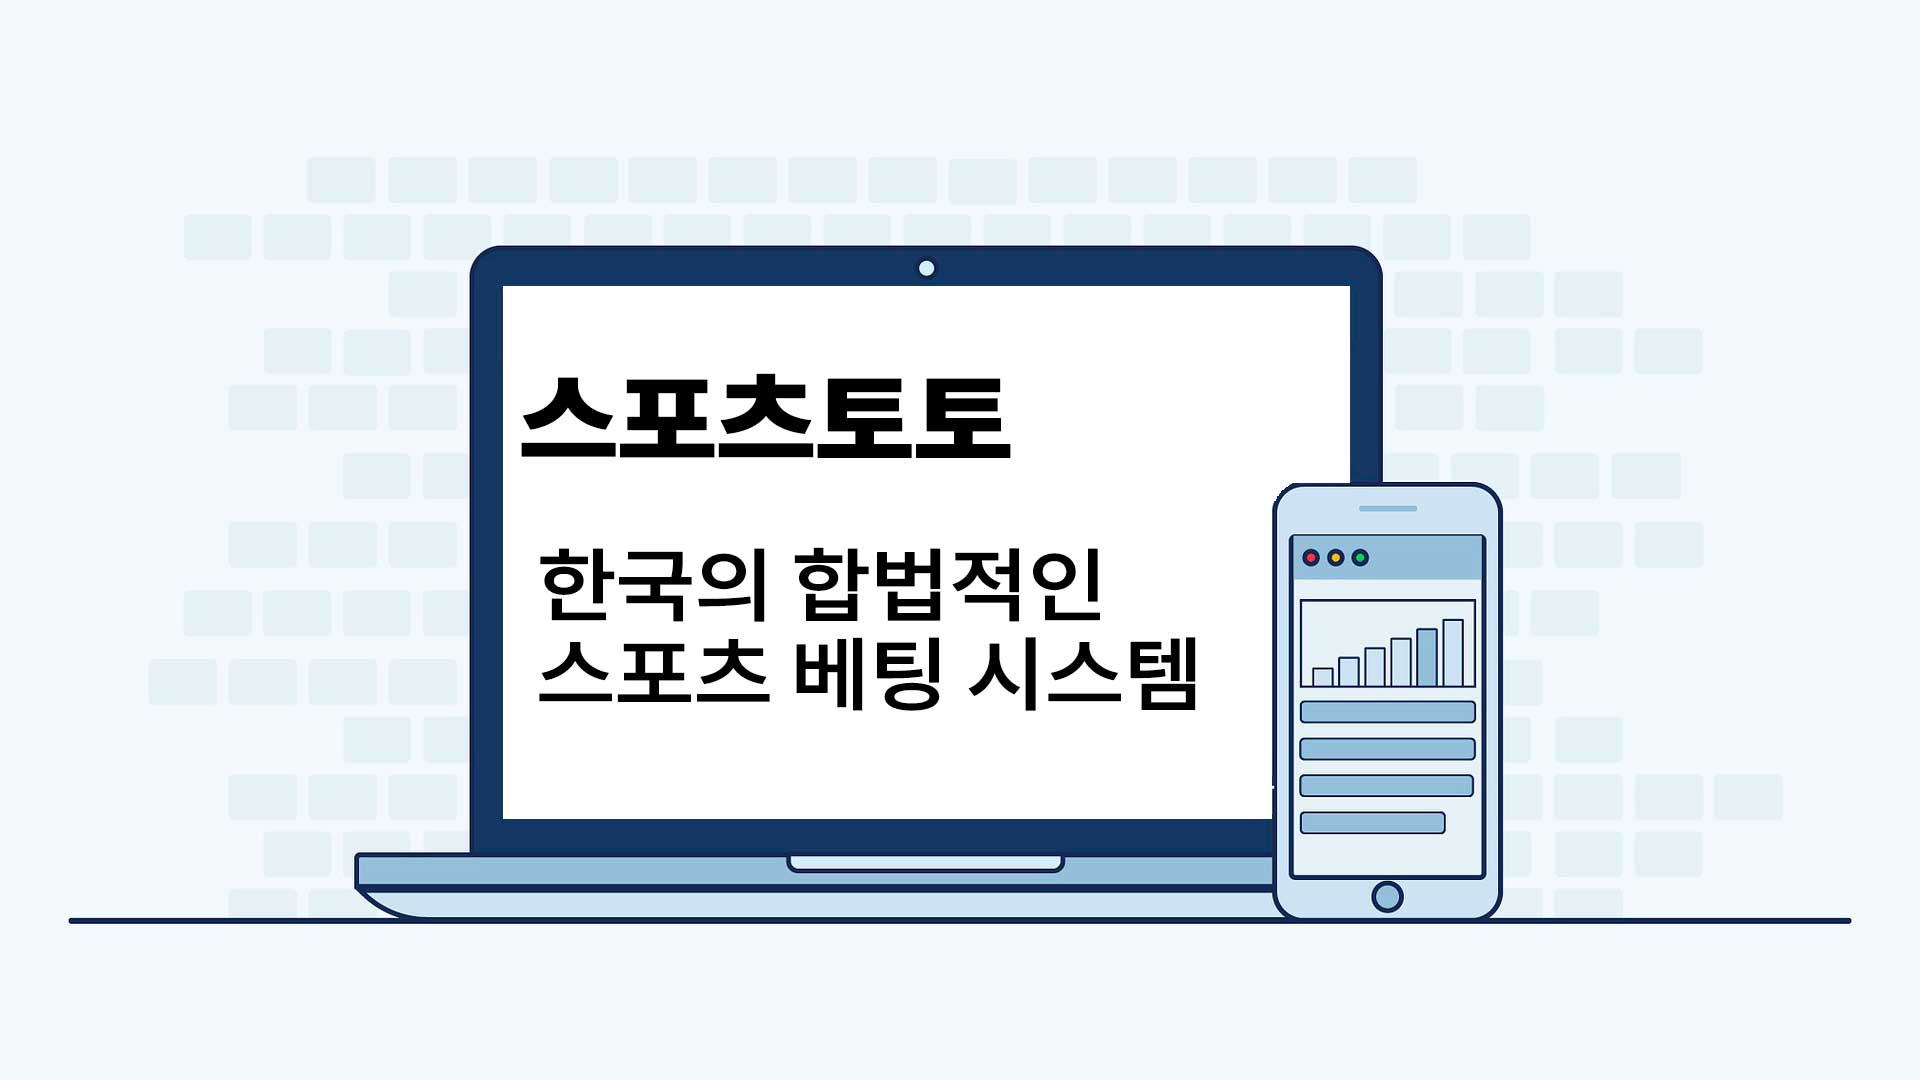 스포츠토토 한국의 합버적인 스포츠 베팅 시스템